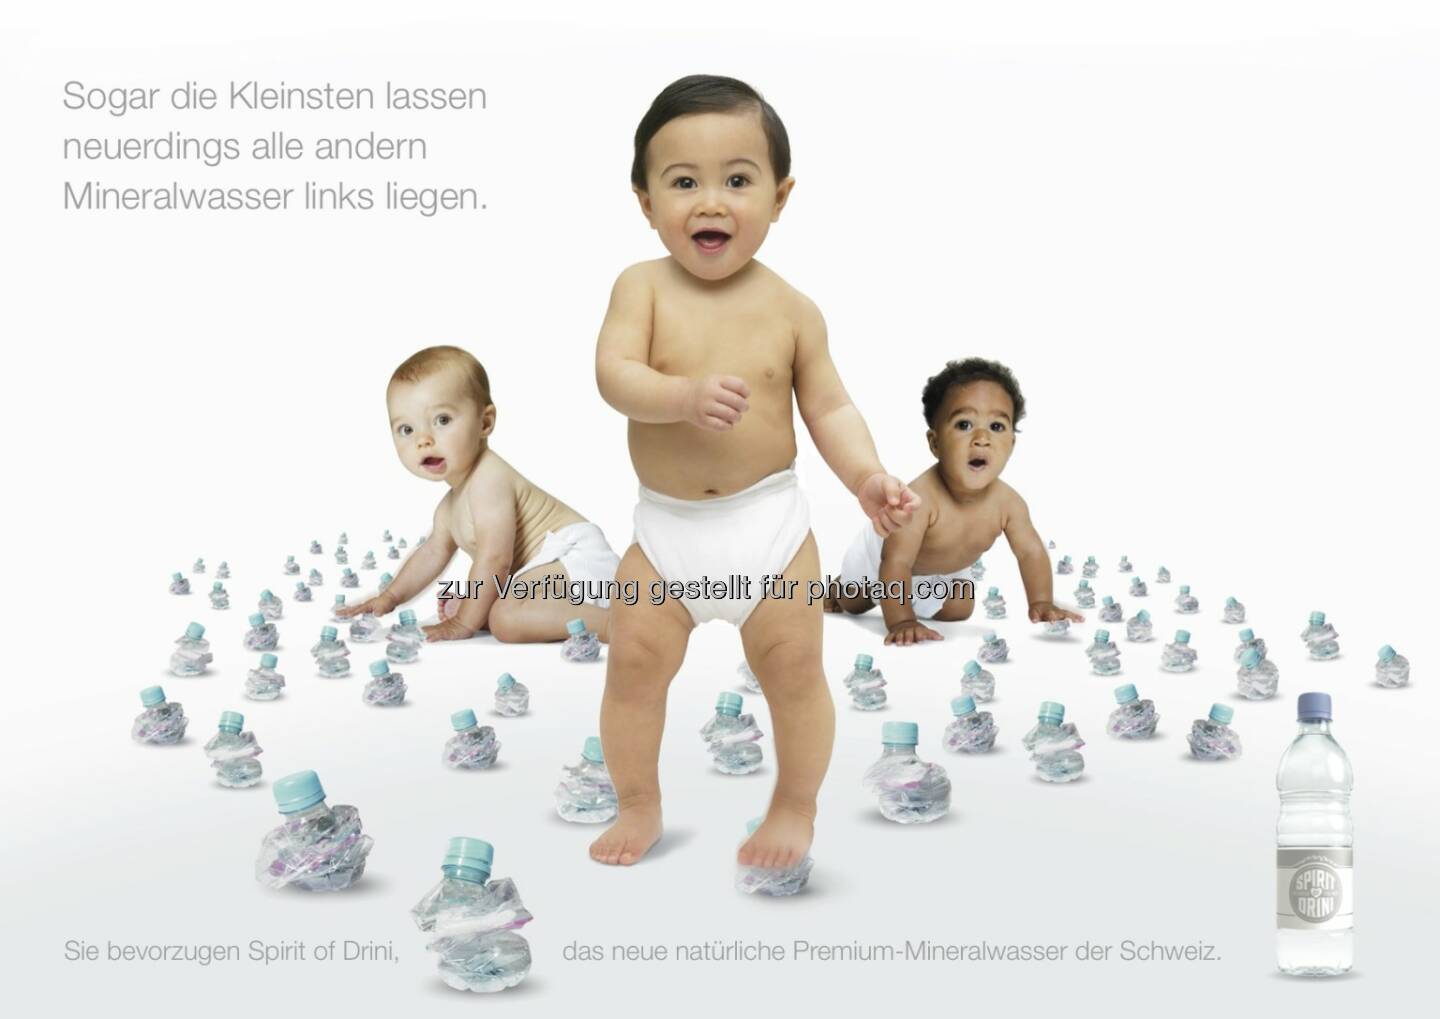 Werbesujet für das neue Mineralwasser Spirit of Drini : Spirit of Drini: Ein neues Mineralwasser provoziert mit frecher Werbung und hilft Kindern in Not weltweit : Fotocredit: Spirit of Drini (Schweiz) Vertriebs GmbH